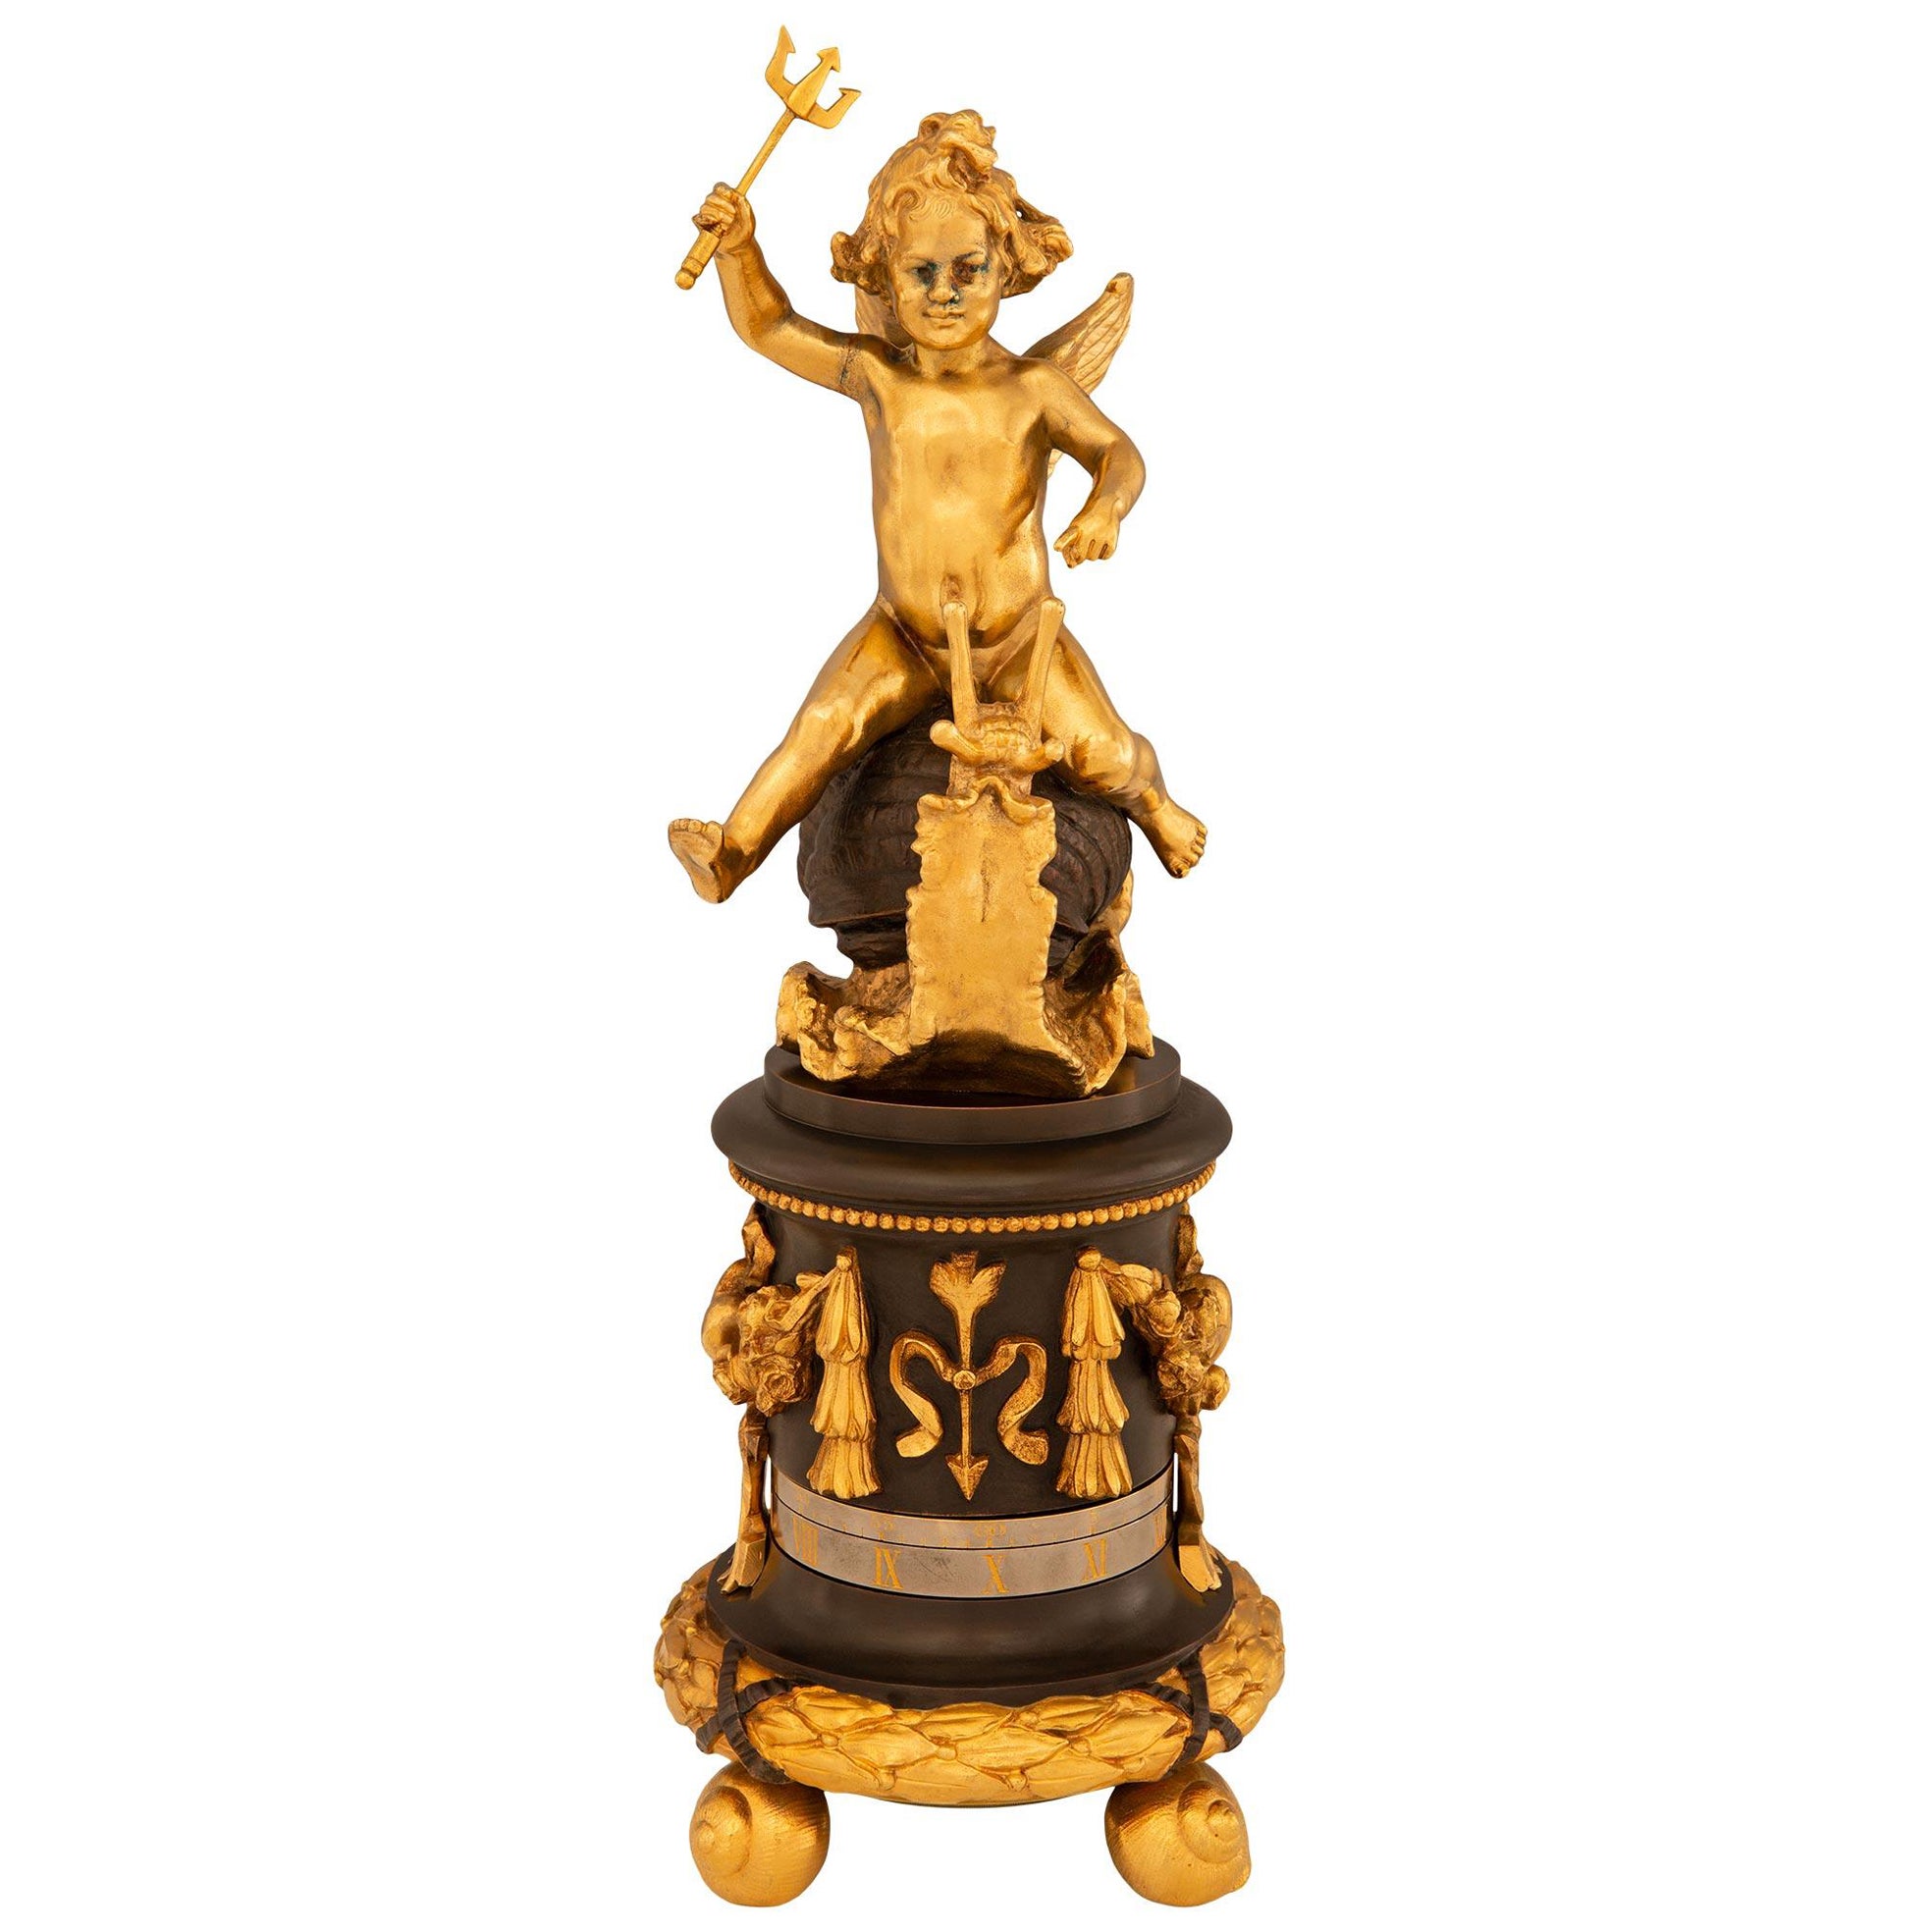 Horloge annuelle en bronze et bronze doré du 19e siècle, d'époque "Belle Epoque".